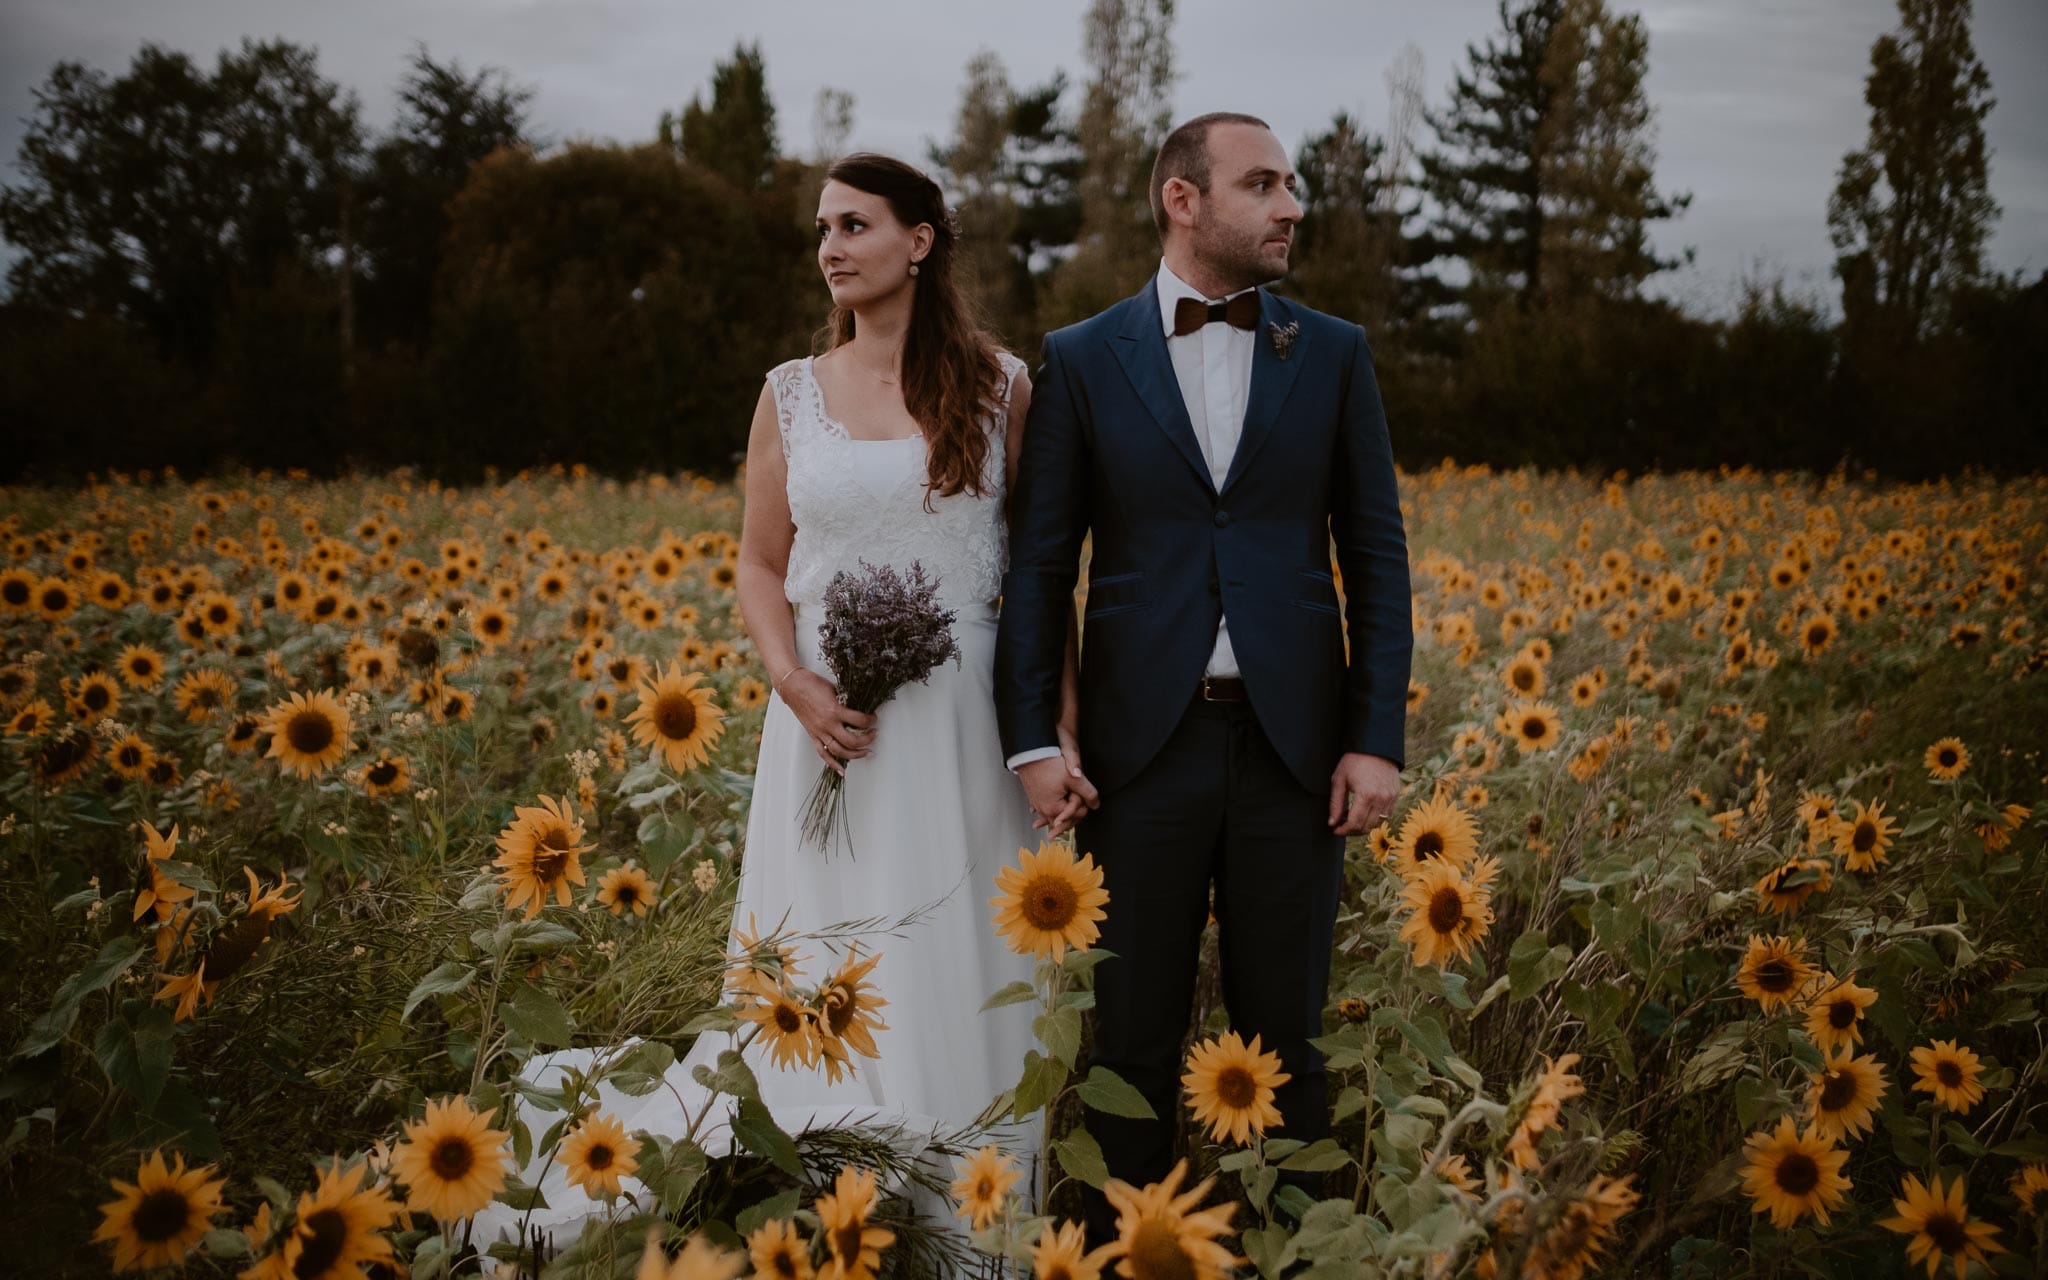 Séance couple après mariage naturelle et romantique dans un champ de tournesols en vendée par Geoffrey Arnoldy photographe